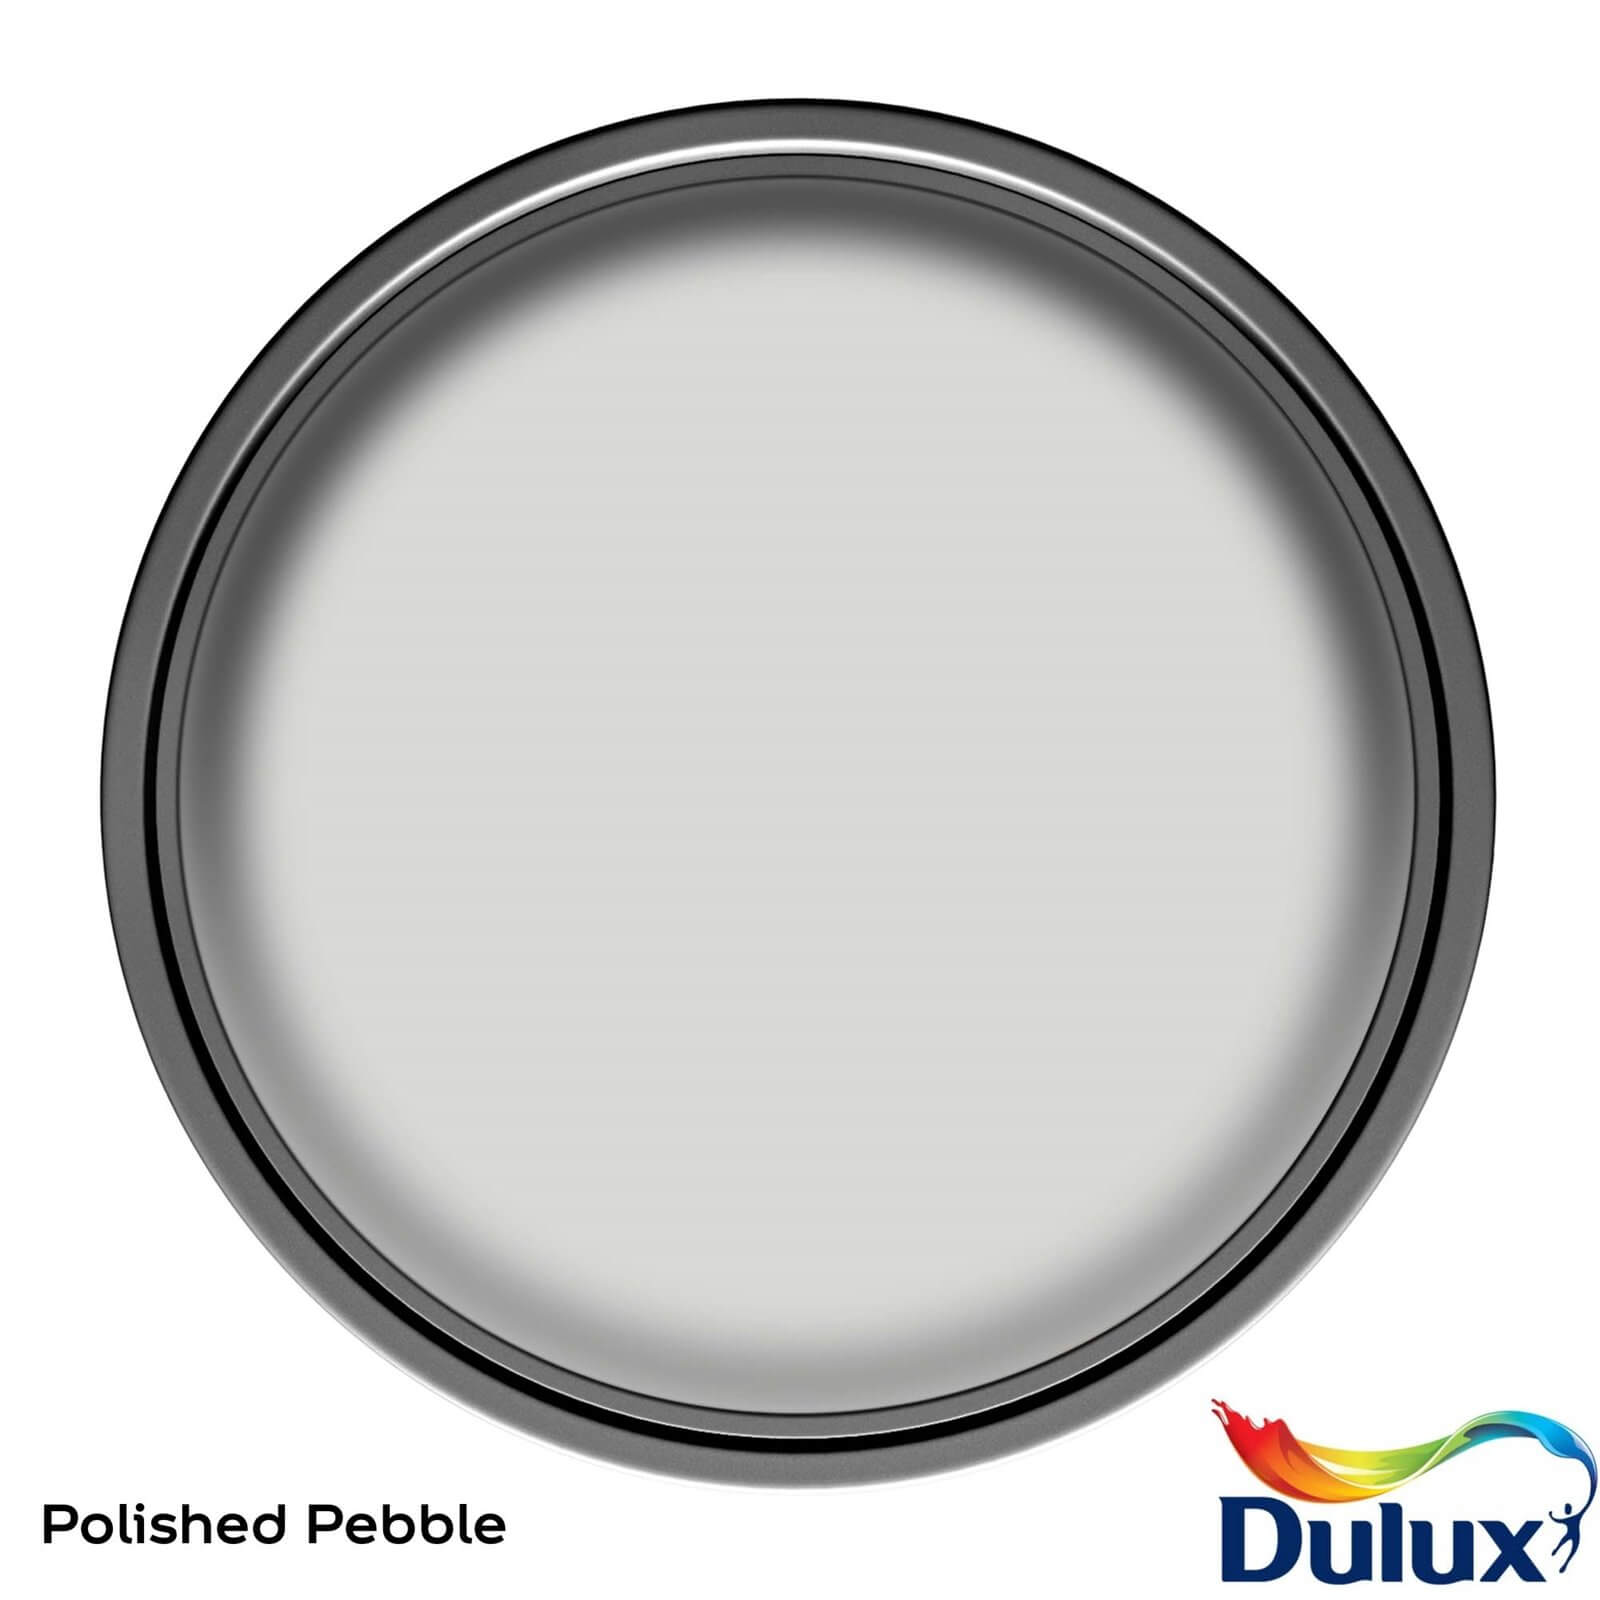 Dulux Easycare Washable & Tough Matt Paint Polished Pebble - 5L